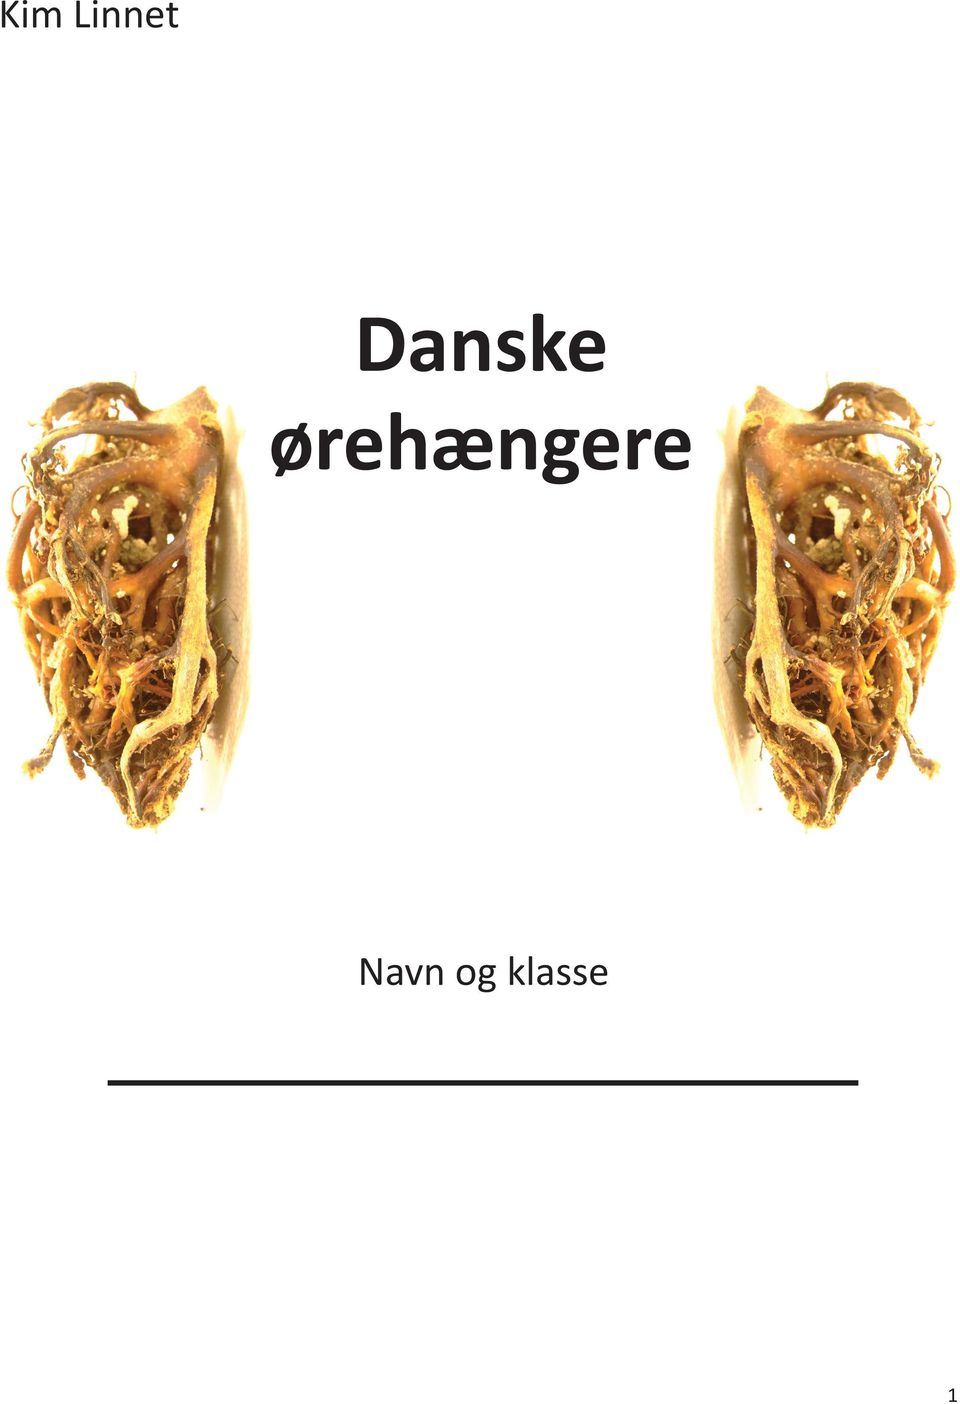 Kim Linnet. Danske ørehængere. Navn og klasse - PDF Free Download